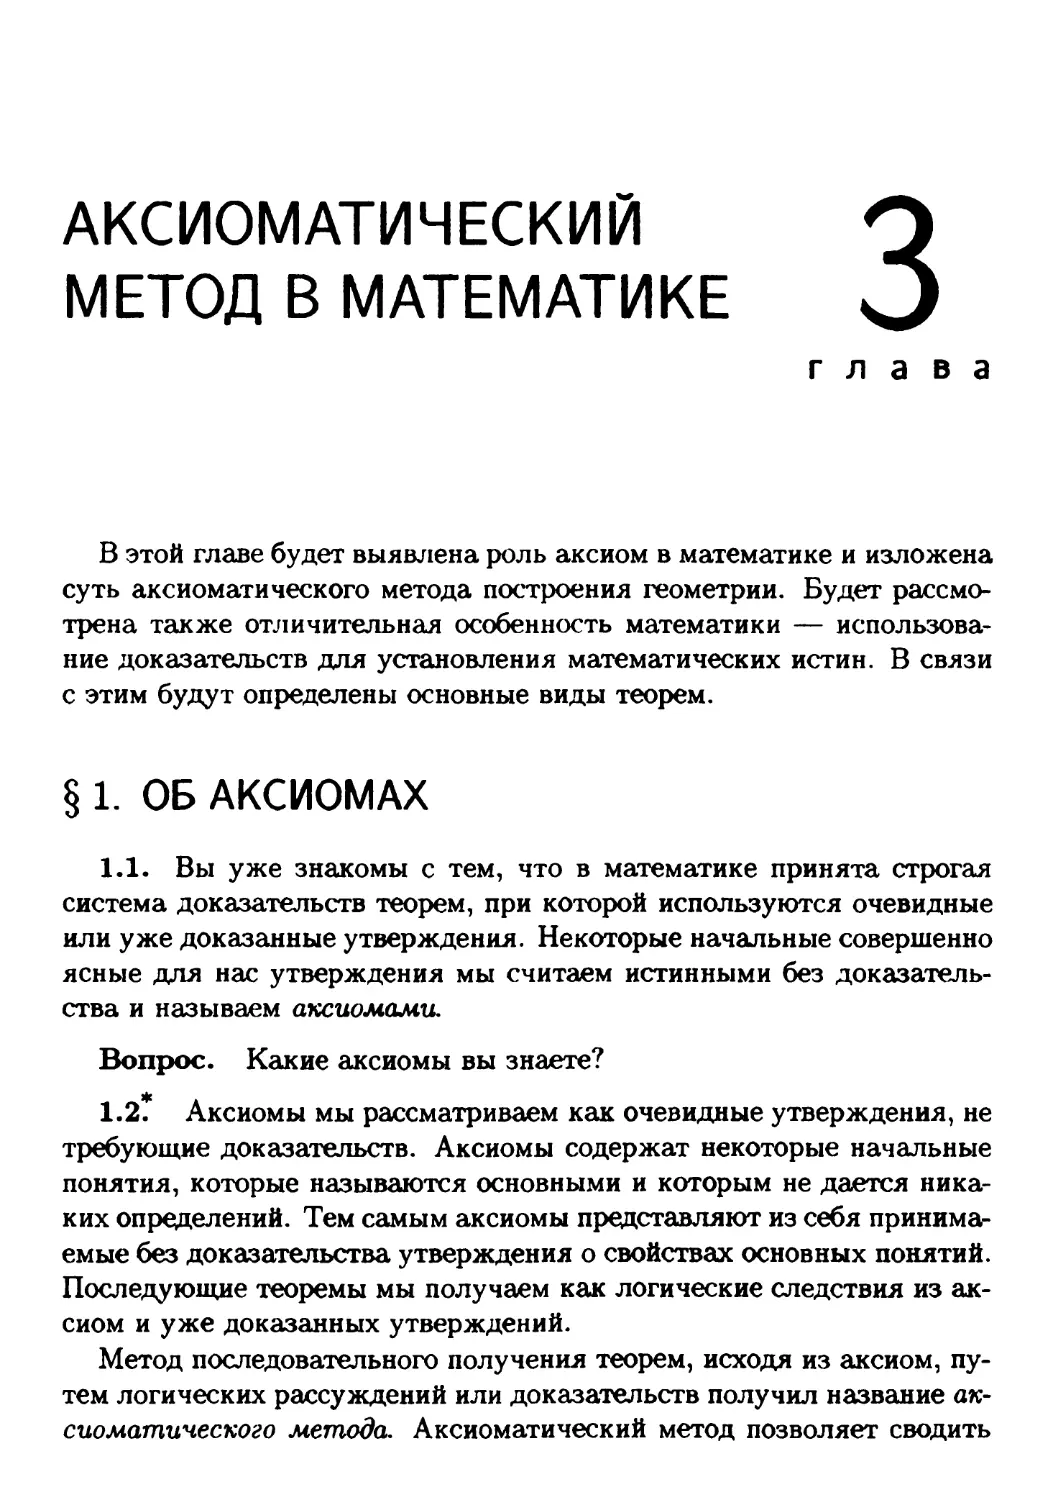 Глава 3. Аксиоматический метод в математике